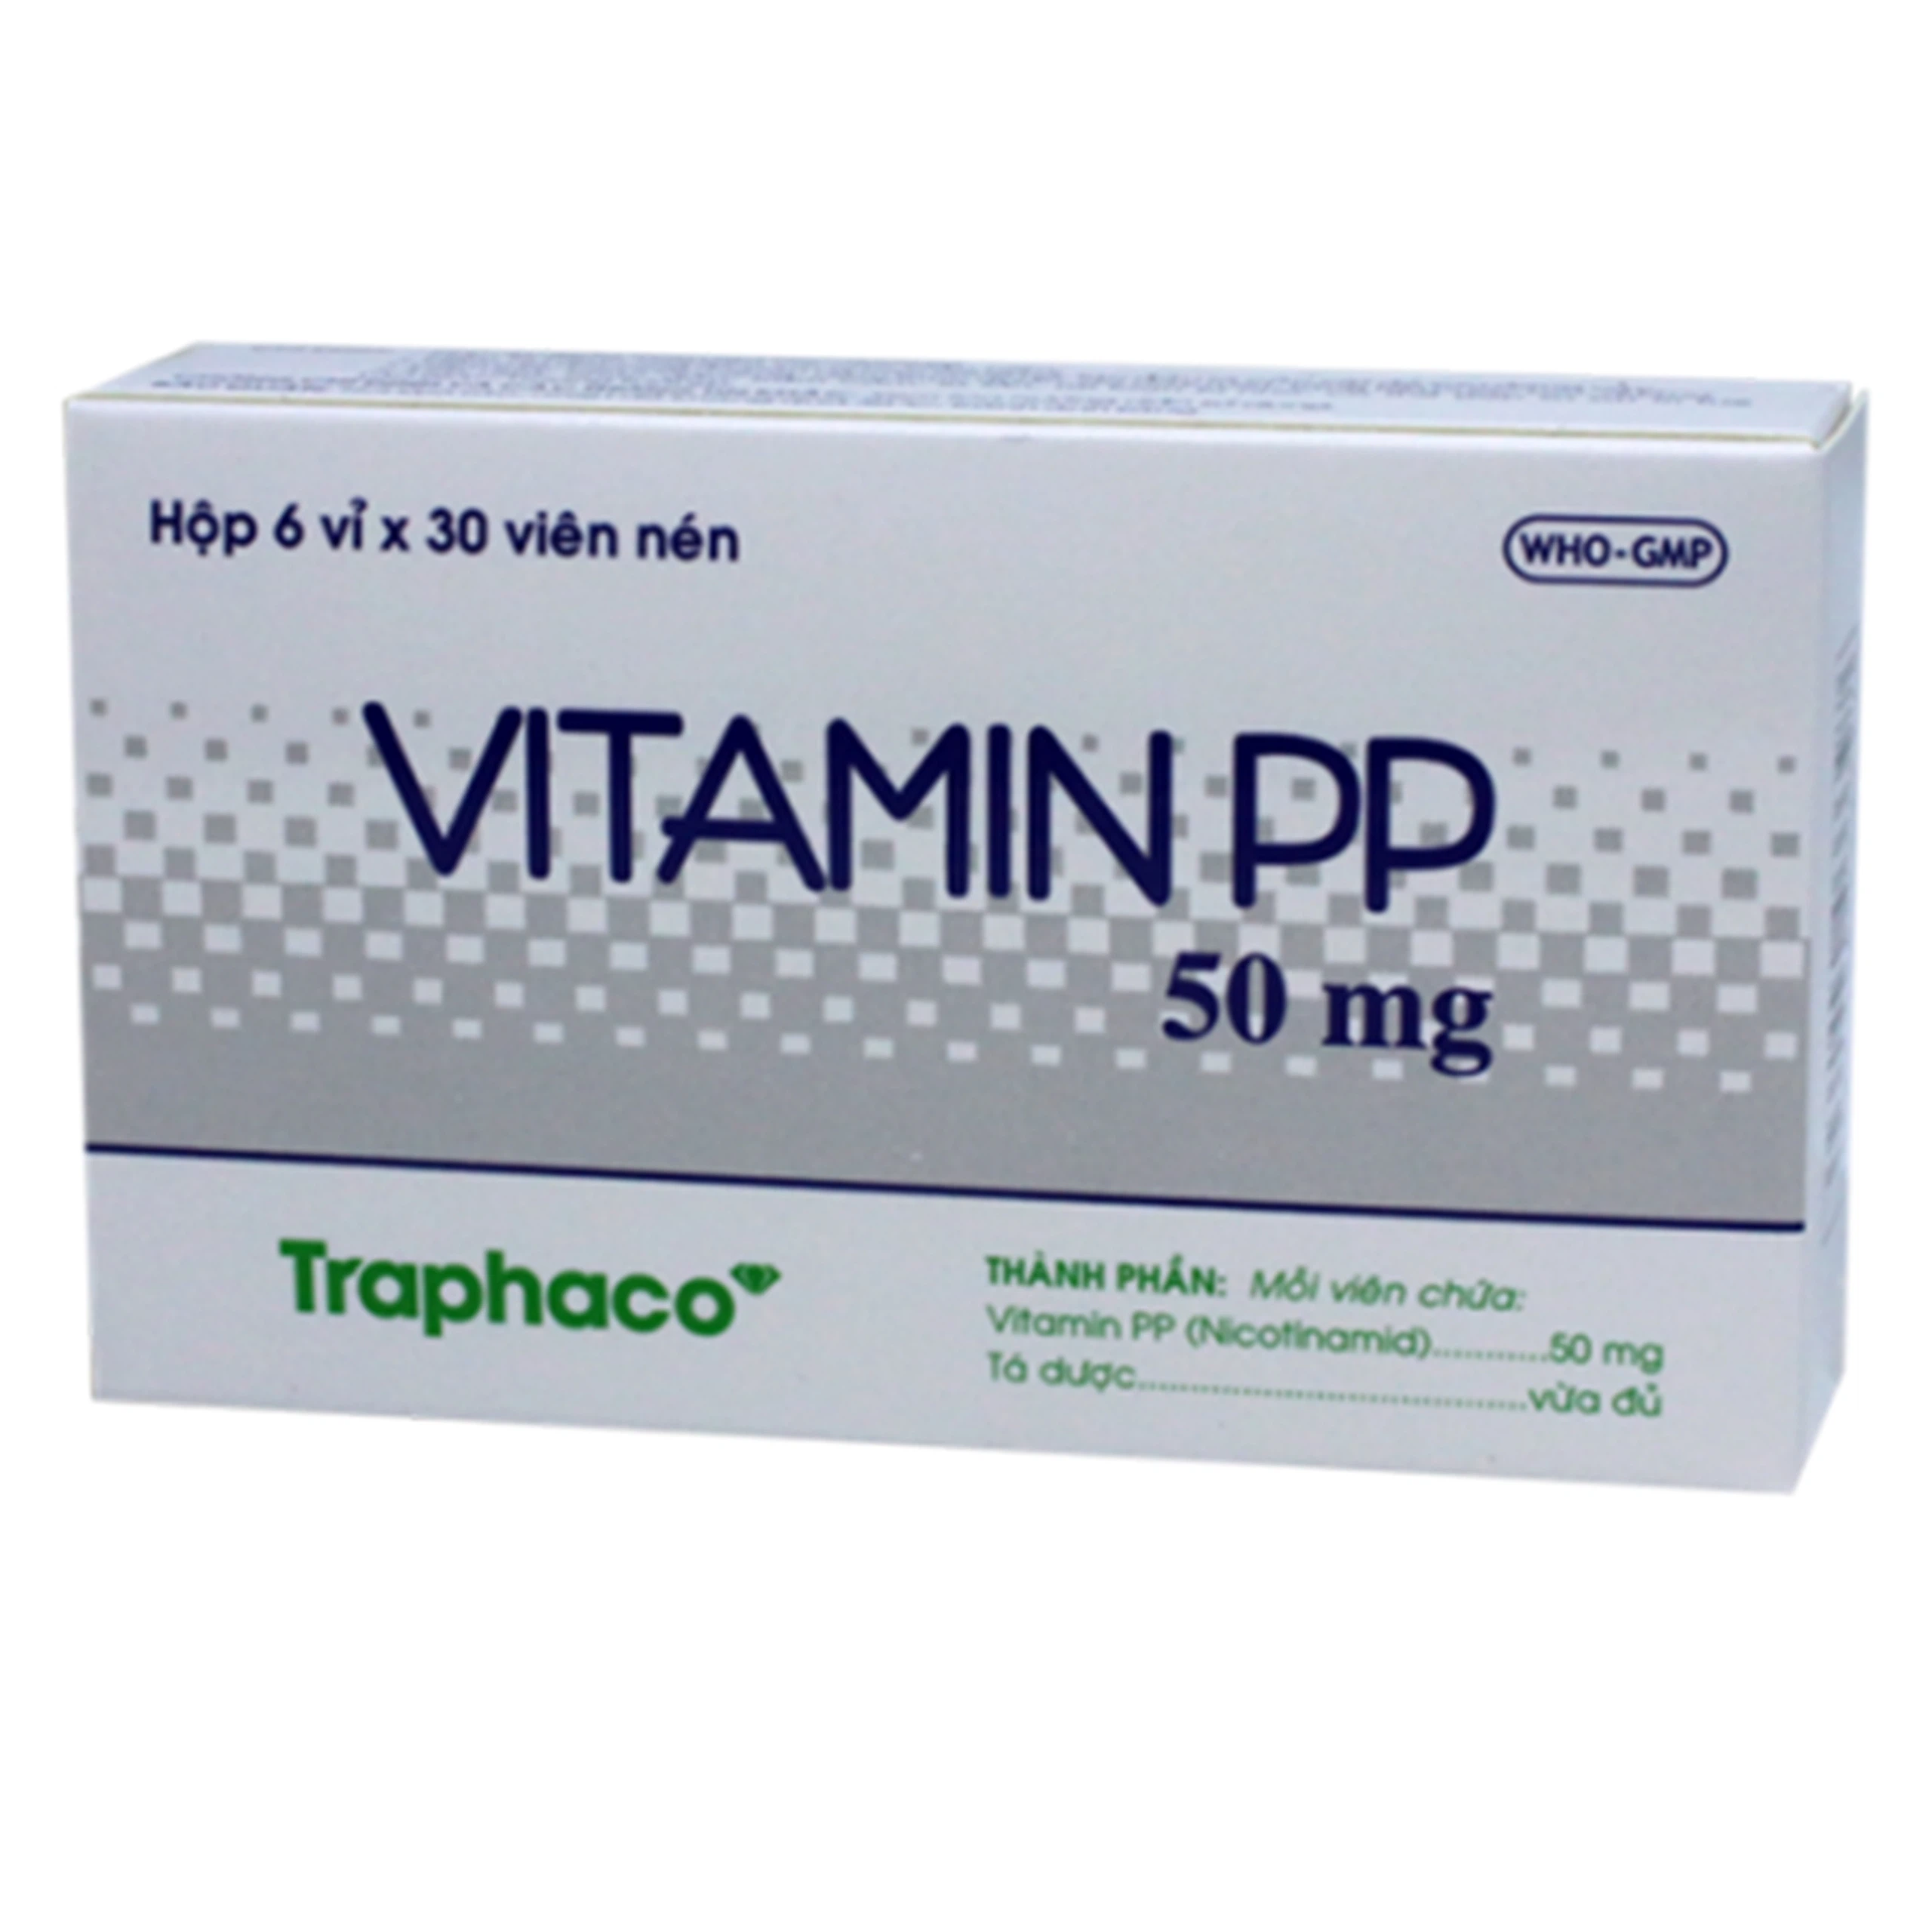 Thuốc Vitamin Pp 50Mg Traphaco điều trị bệnh Pellagra (6 vỉ x 30 viên)